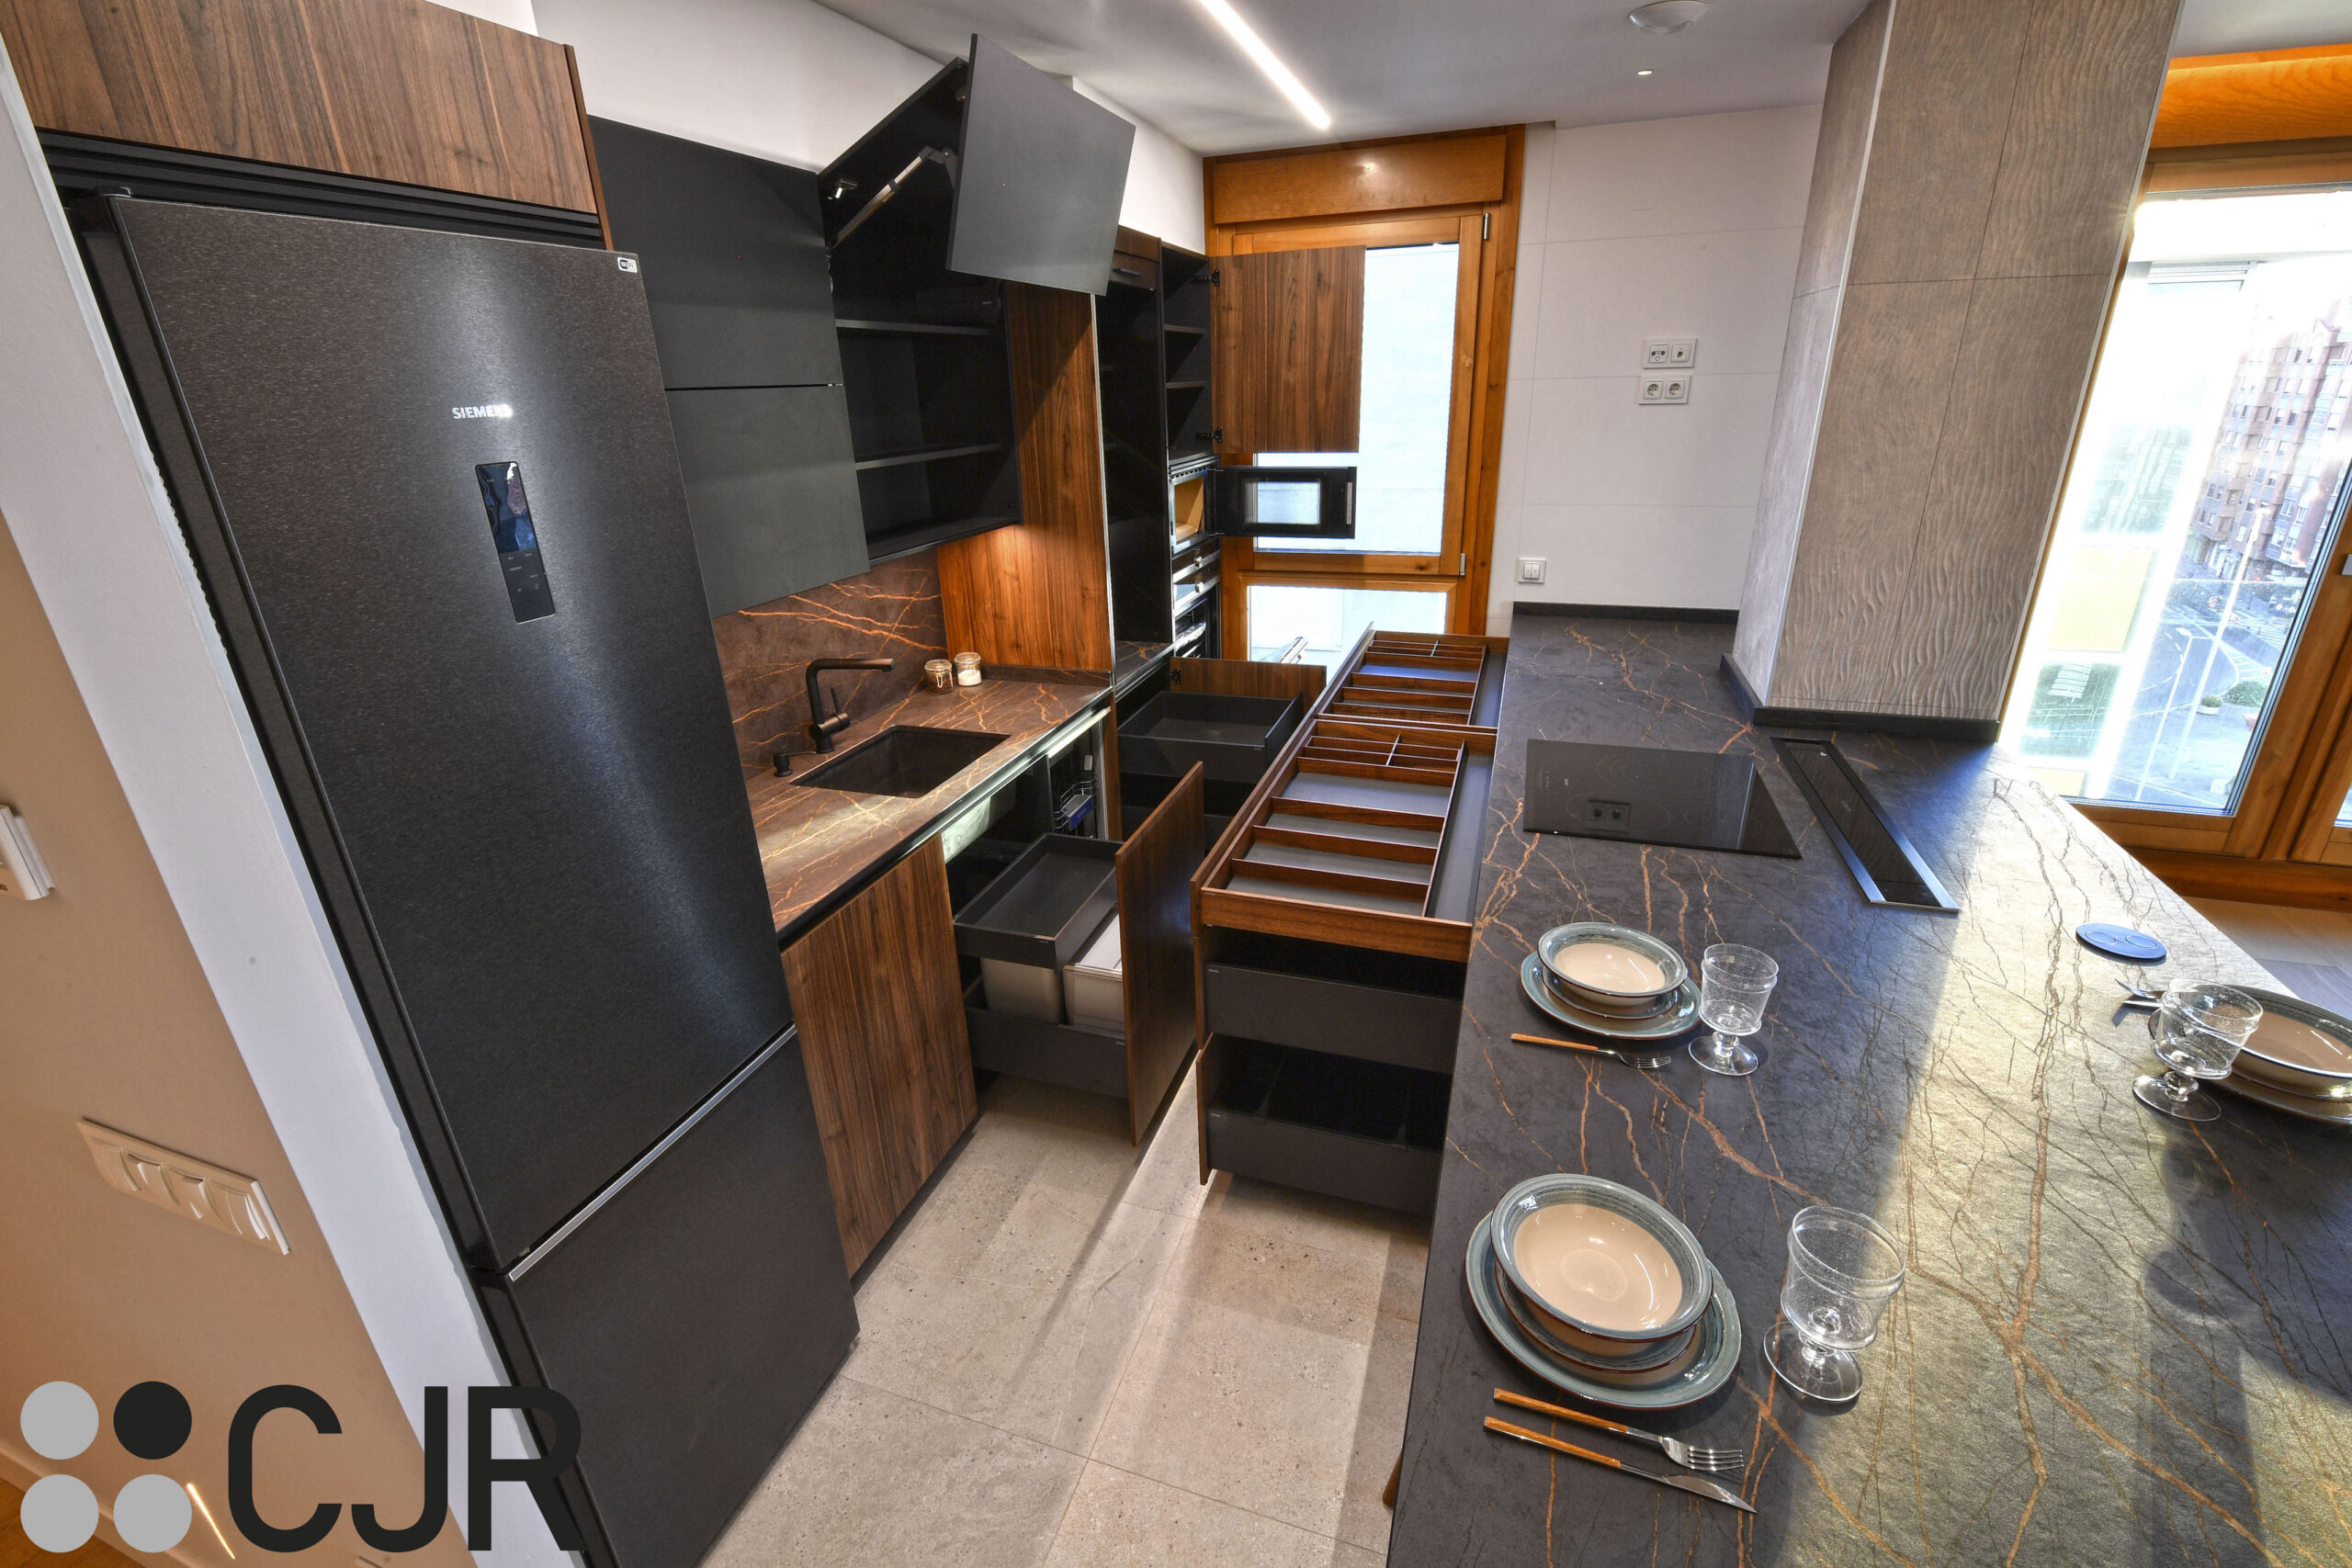 muebles bajos de cocina en madera y negro cocina abierta cocinas cjr